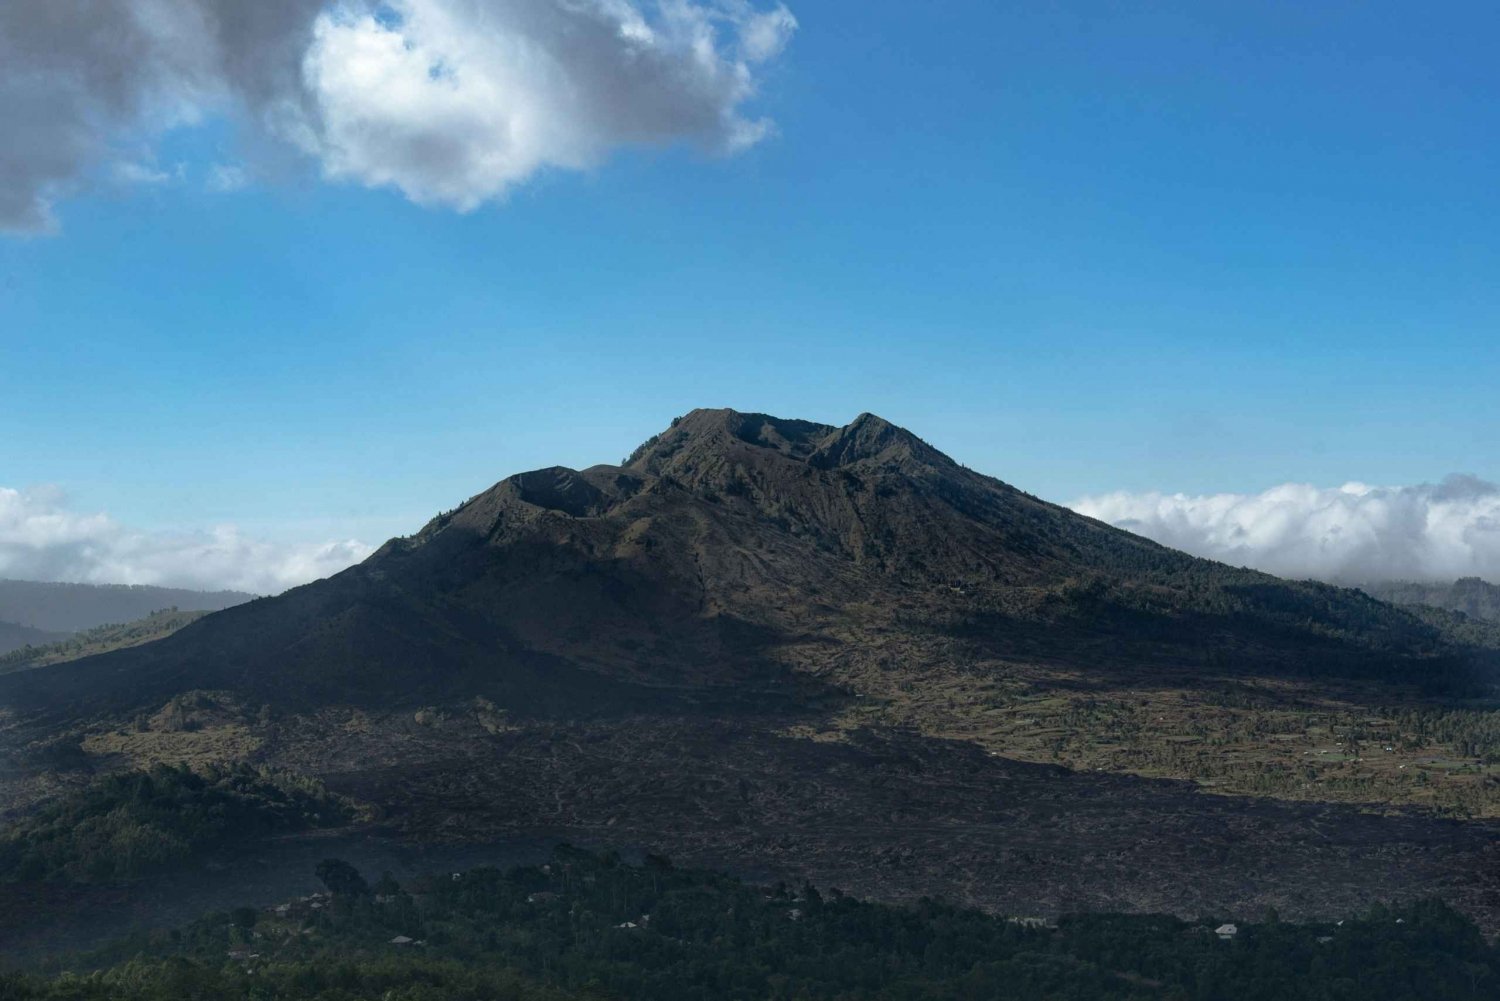 Visite d'une jounée Kintamani Mt. Batur Volcano View Tour